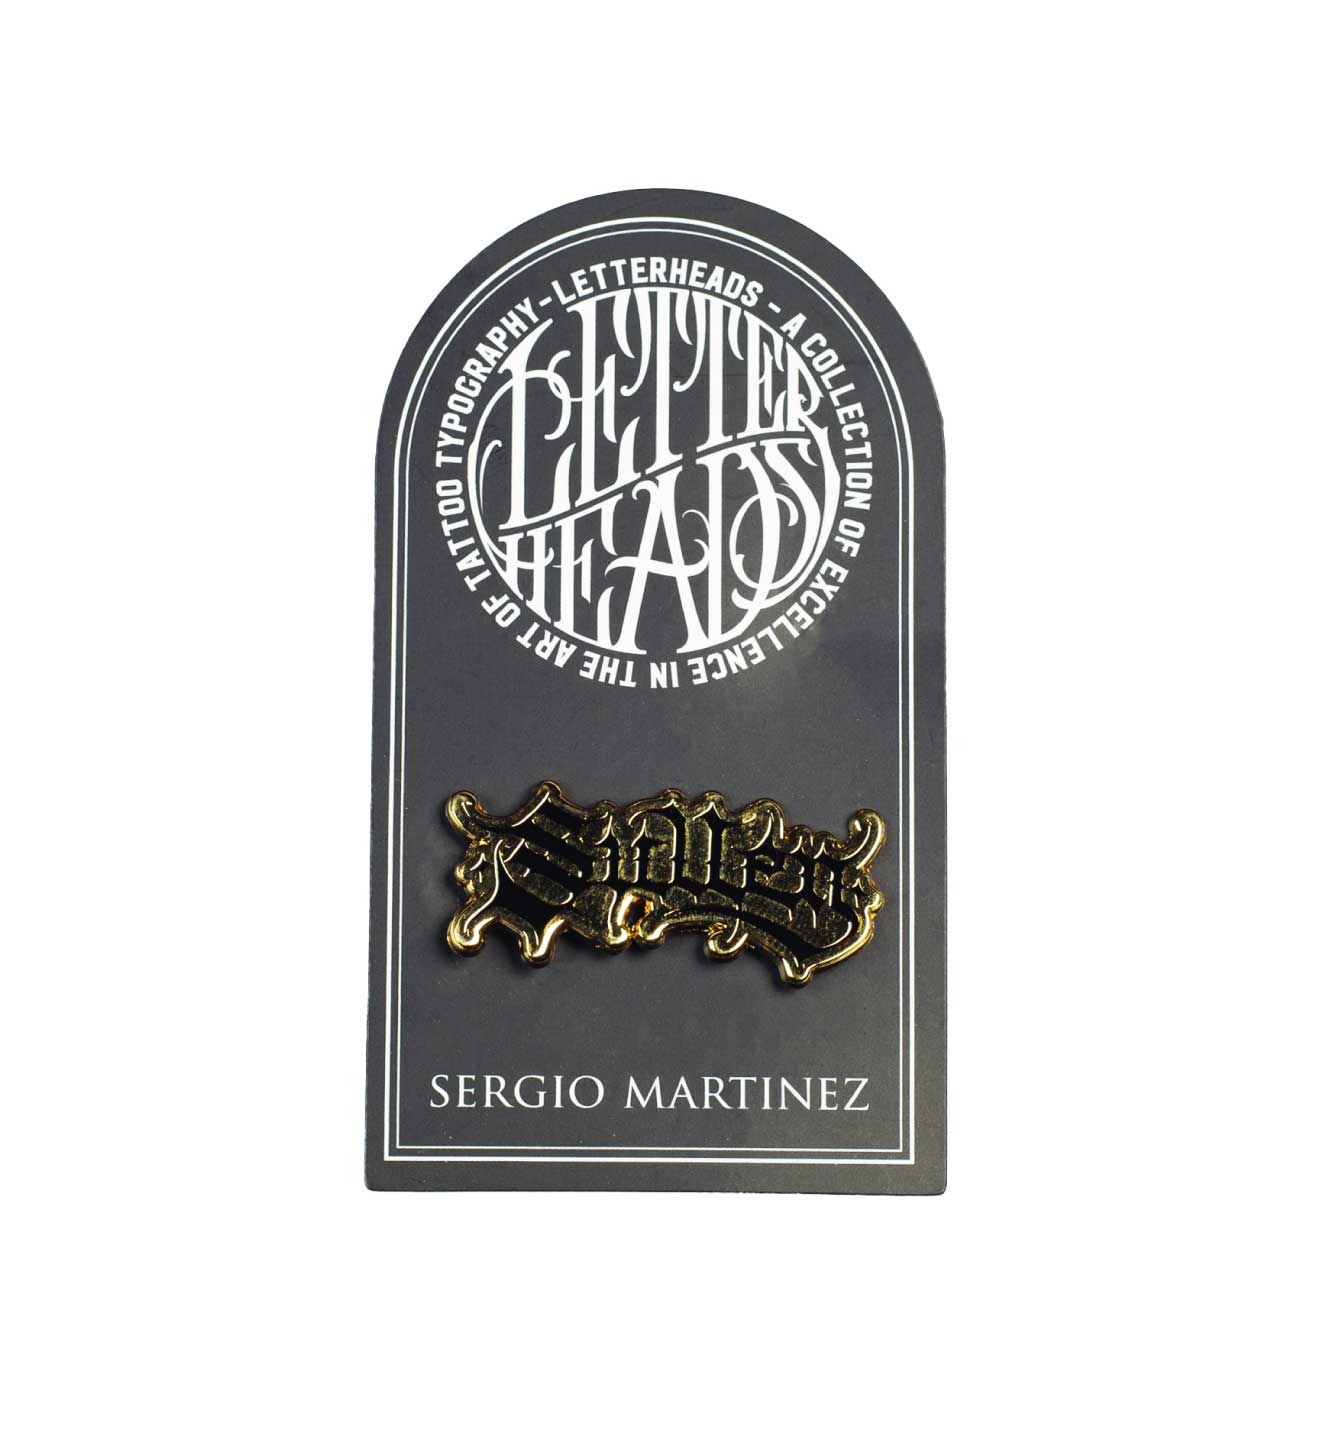 LETTERHEADS #15 - Sergio Martinez - @sergionegative